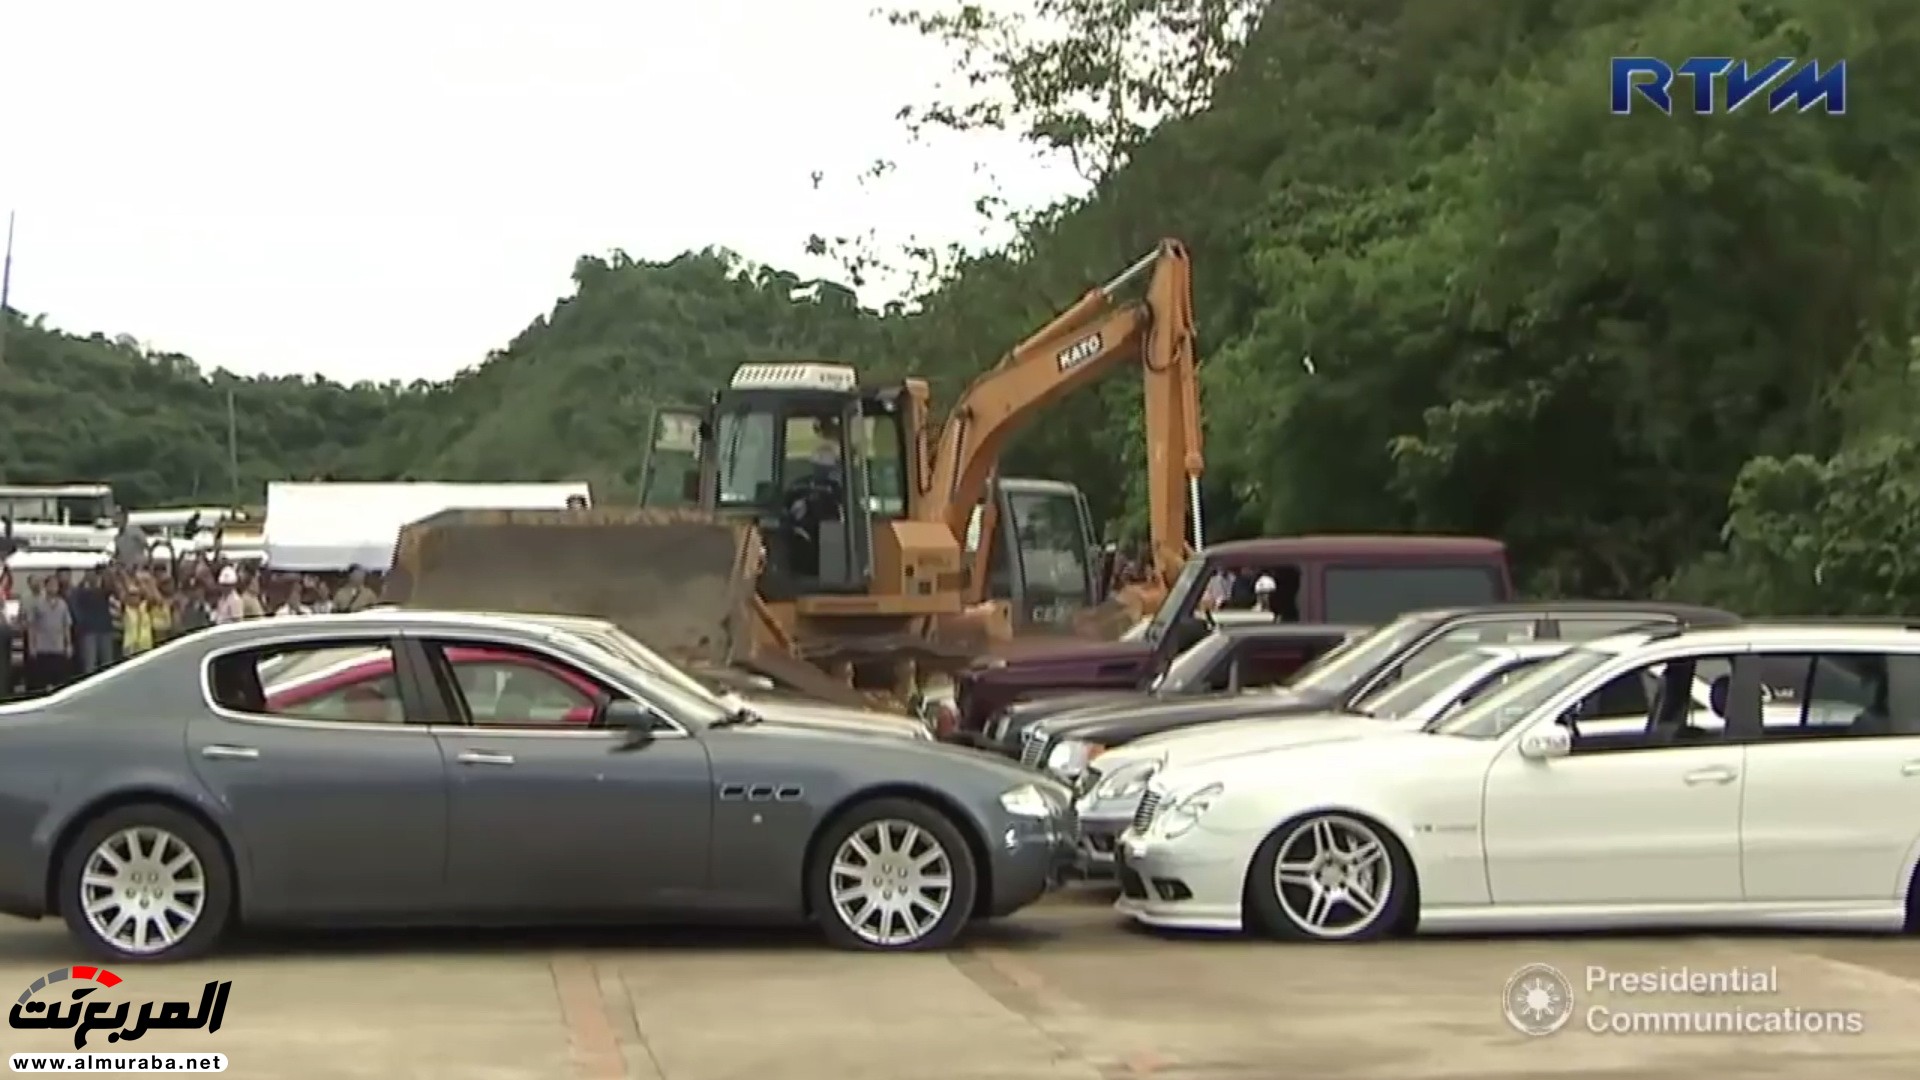 الحكومة الفلبينية تدمر 14 سيارة نادرة بقيمة 2 مليار ريال 34